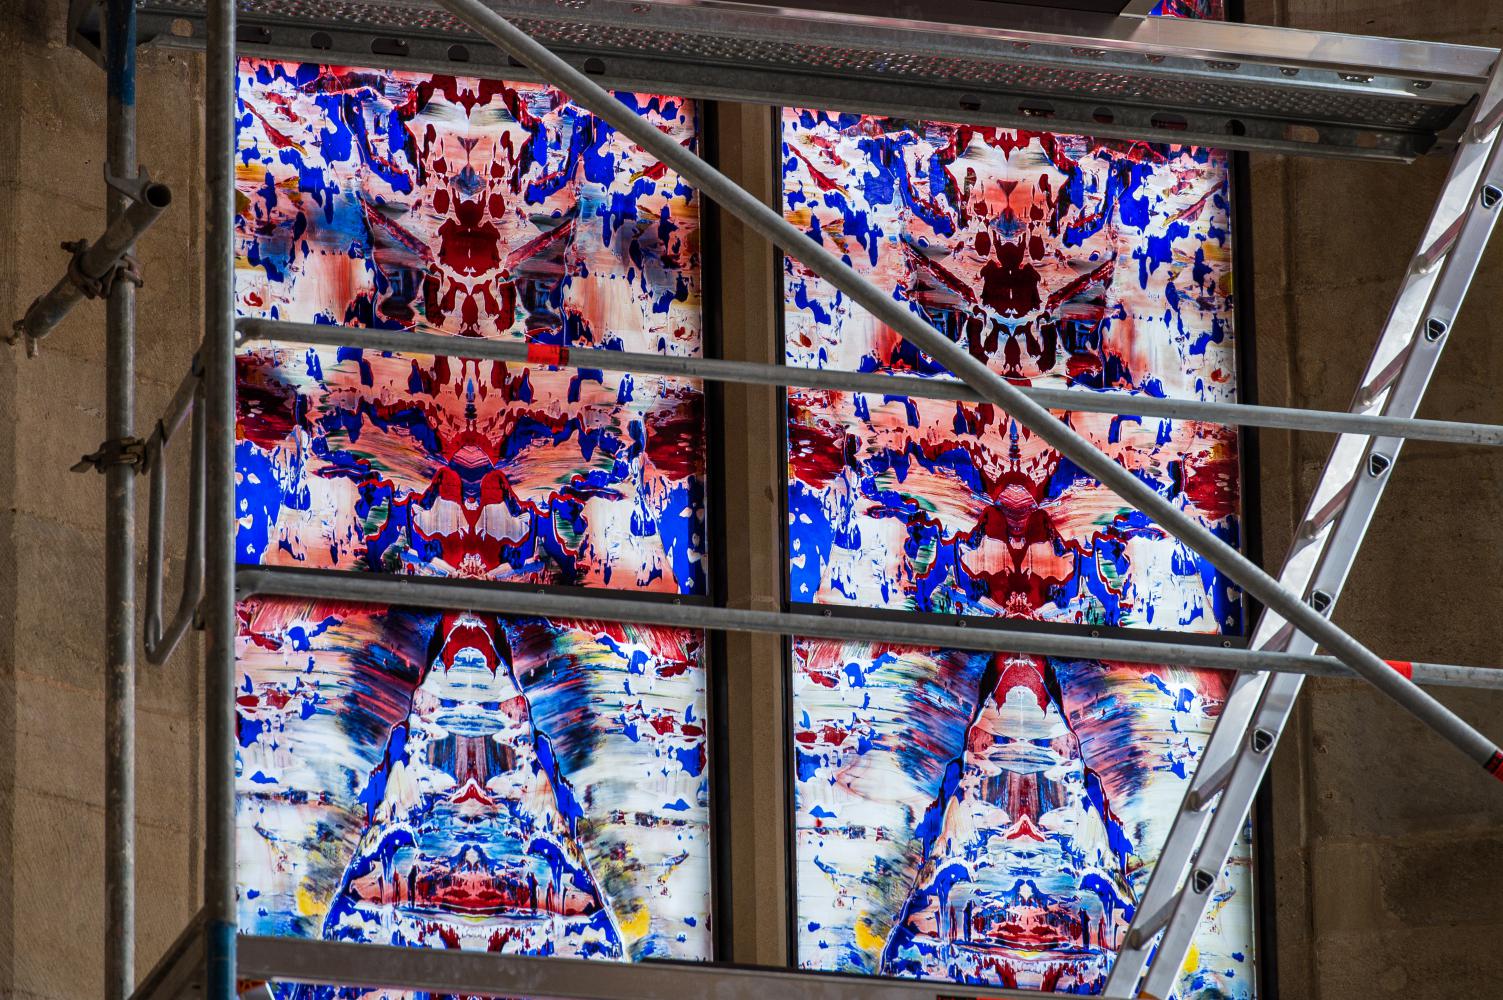 Das erste der drei von Künstler Gerhard Richter gestalteten Chorfenster wurde in die Abtei im saarländischen Tholey eingebaut